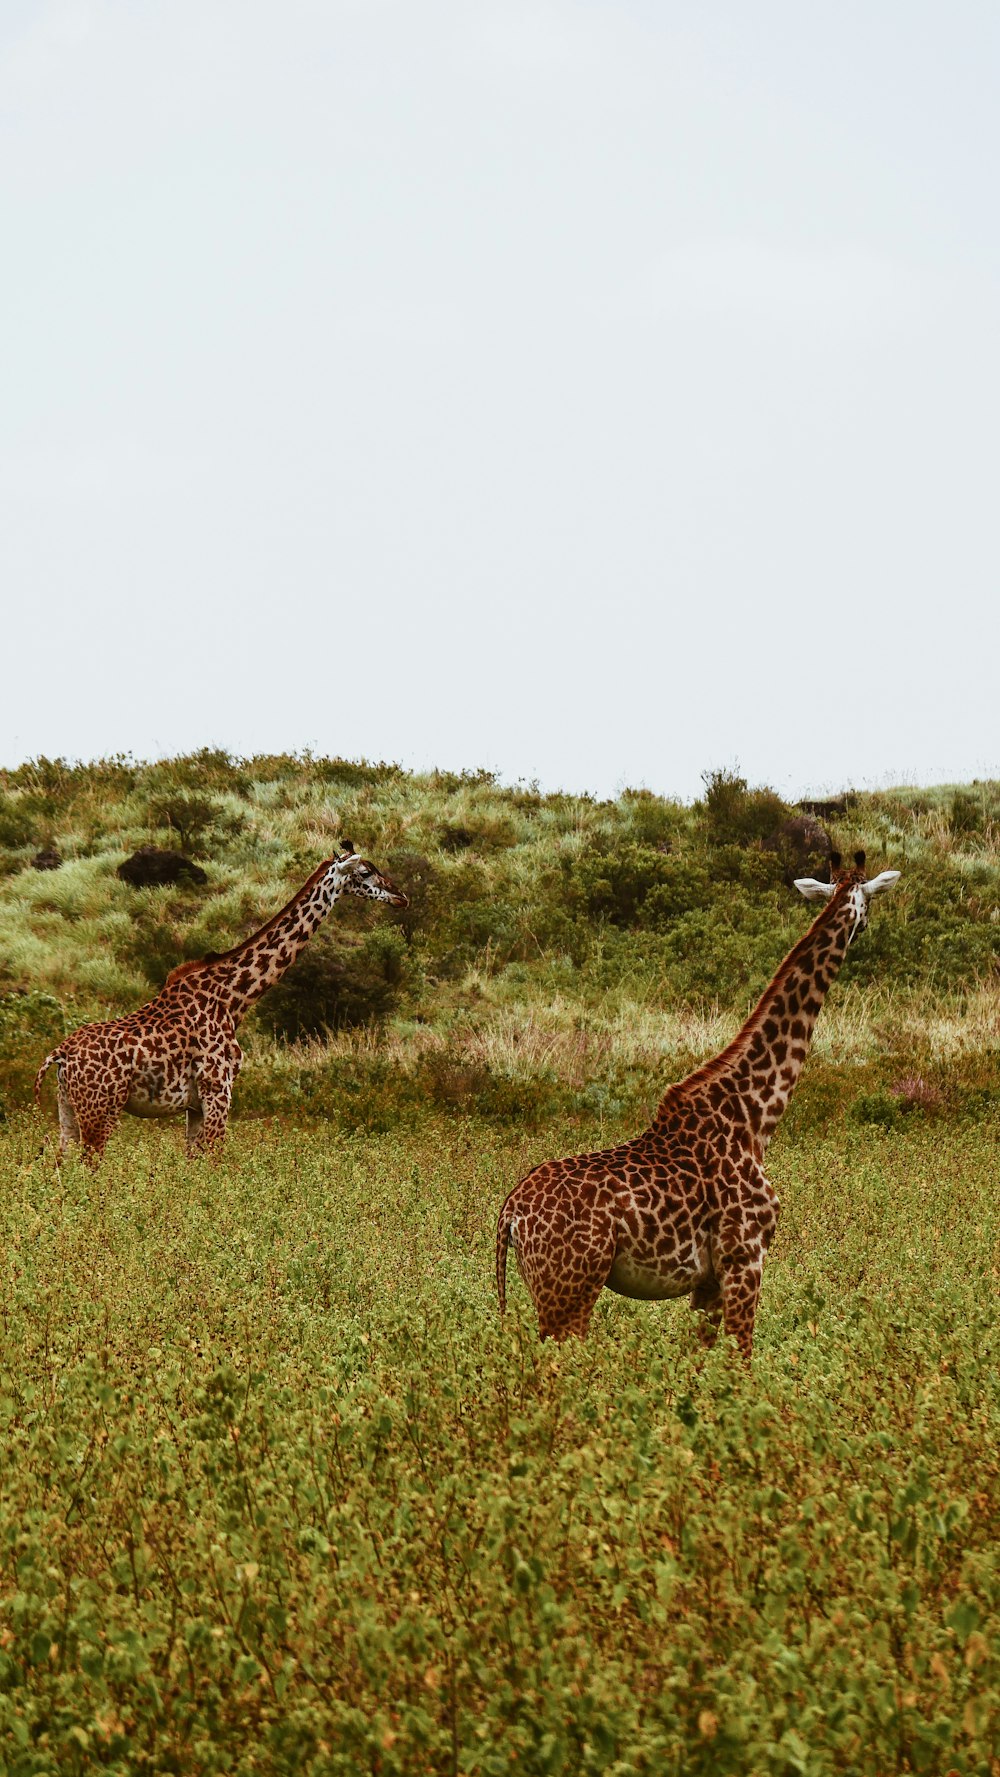 two giraffes on grass